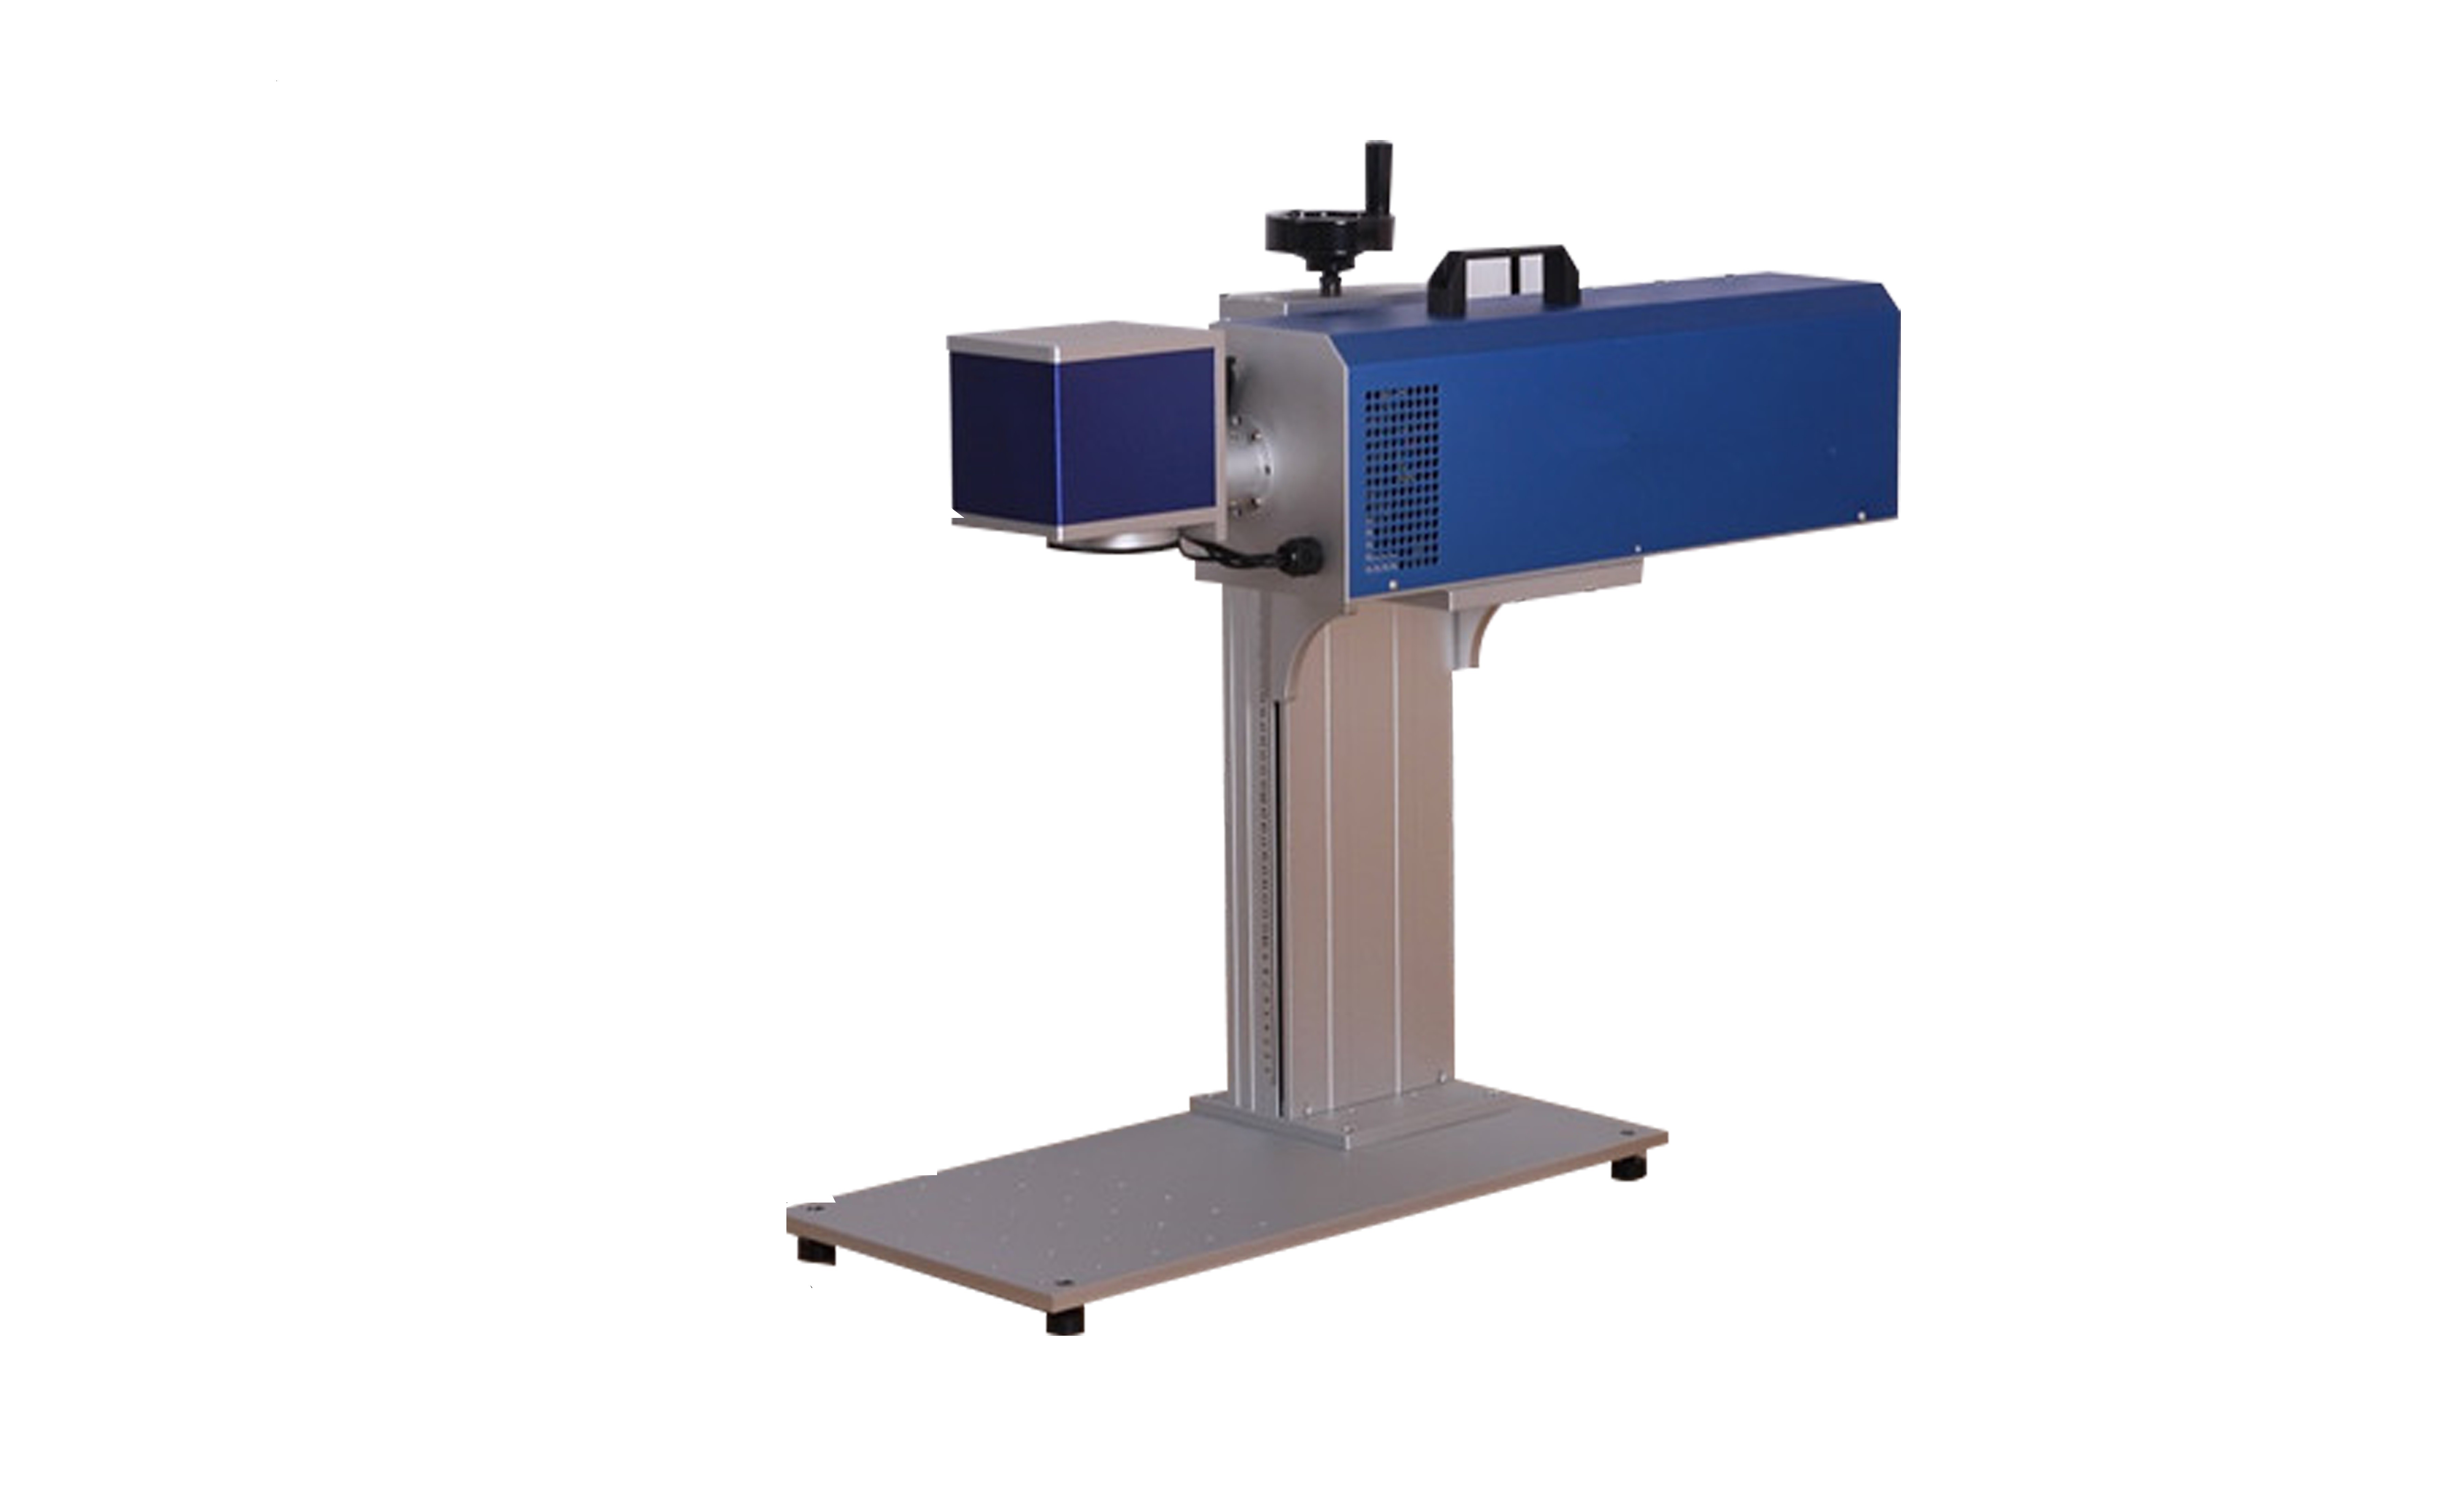  Air Cooling Co2 Laser Marking System , Co2 Laser Marker 10600nm Laser Wavelength Manufactures